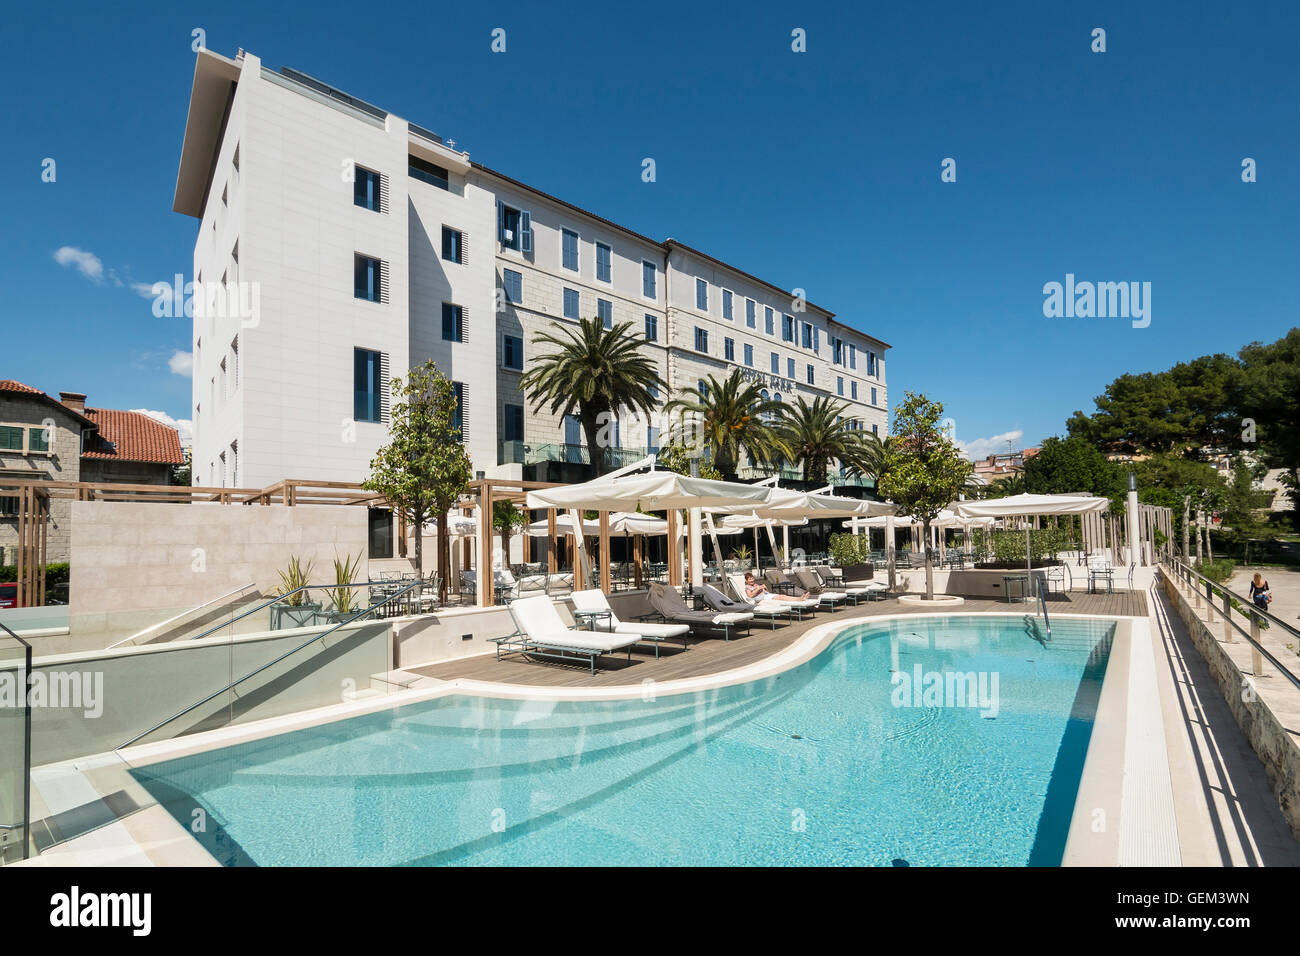 Hatzeov perivoj Hotel Park, 3, 21000 Split, Croatie Split, Croatie, la côte dalmate Banque D'Images